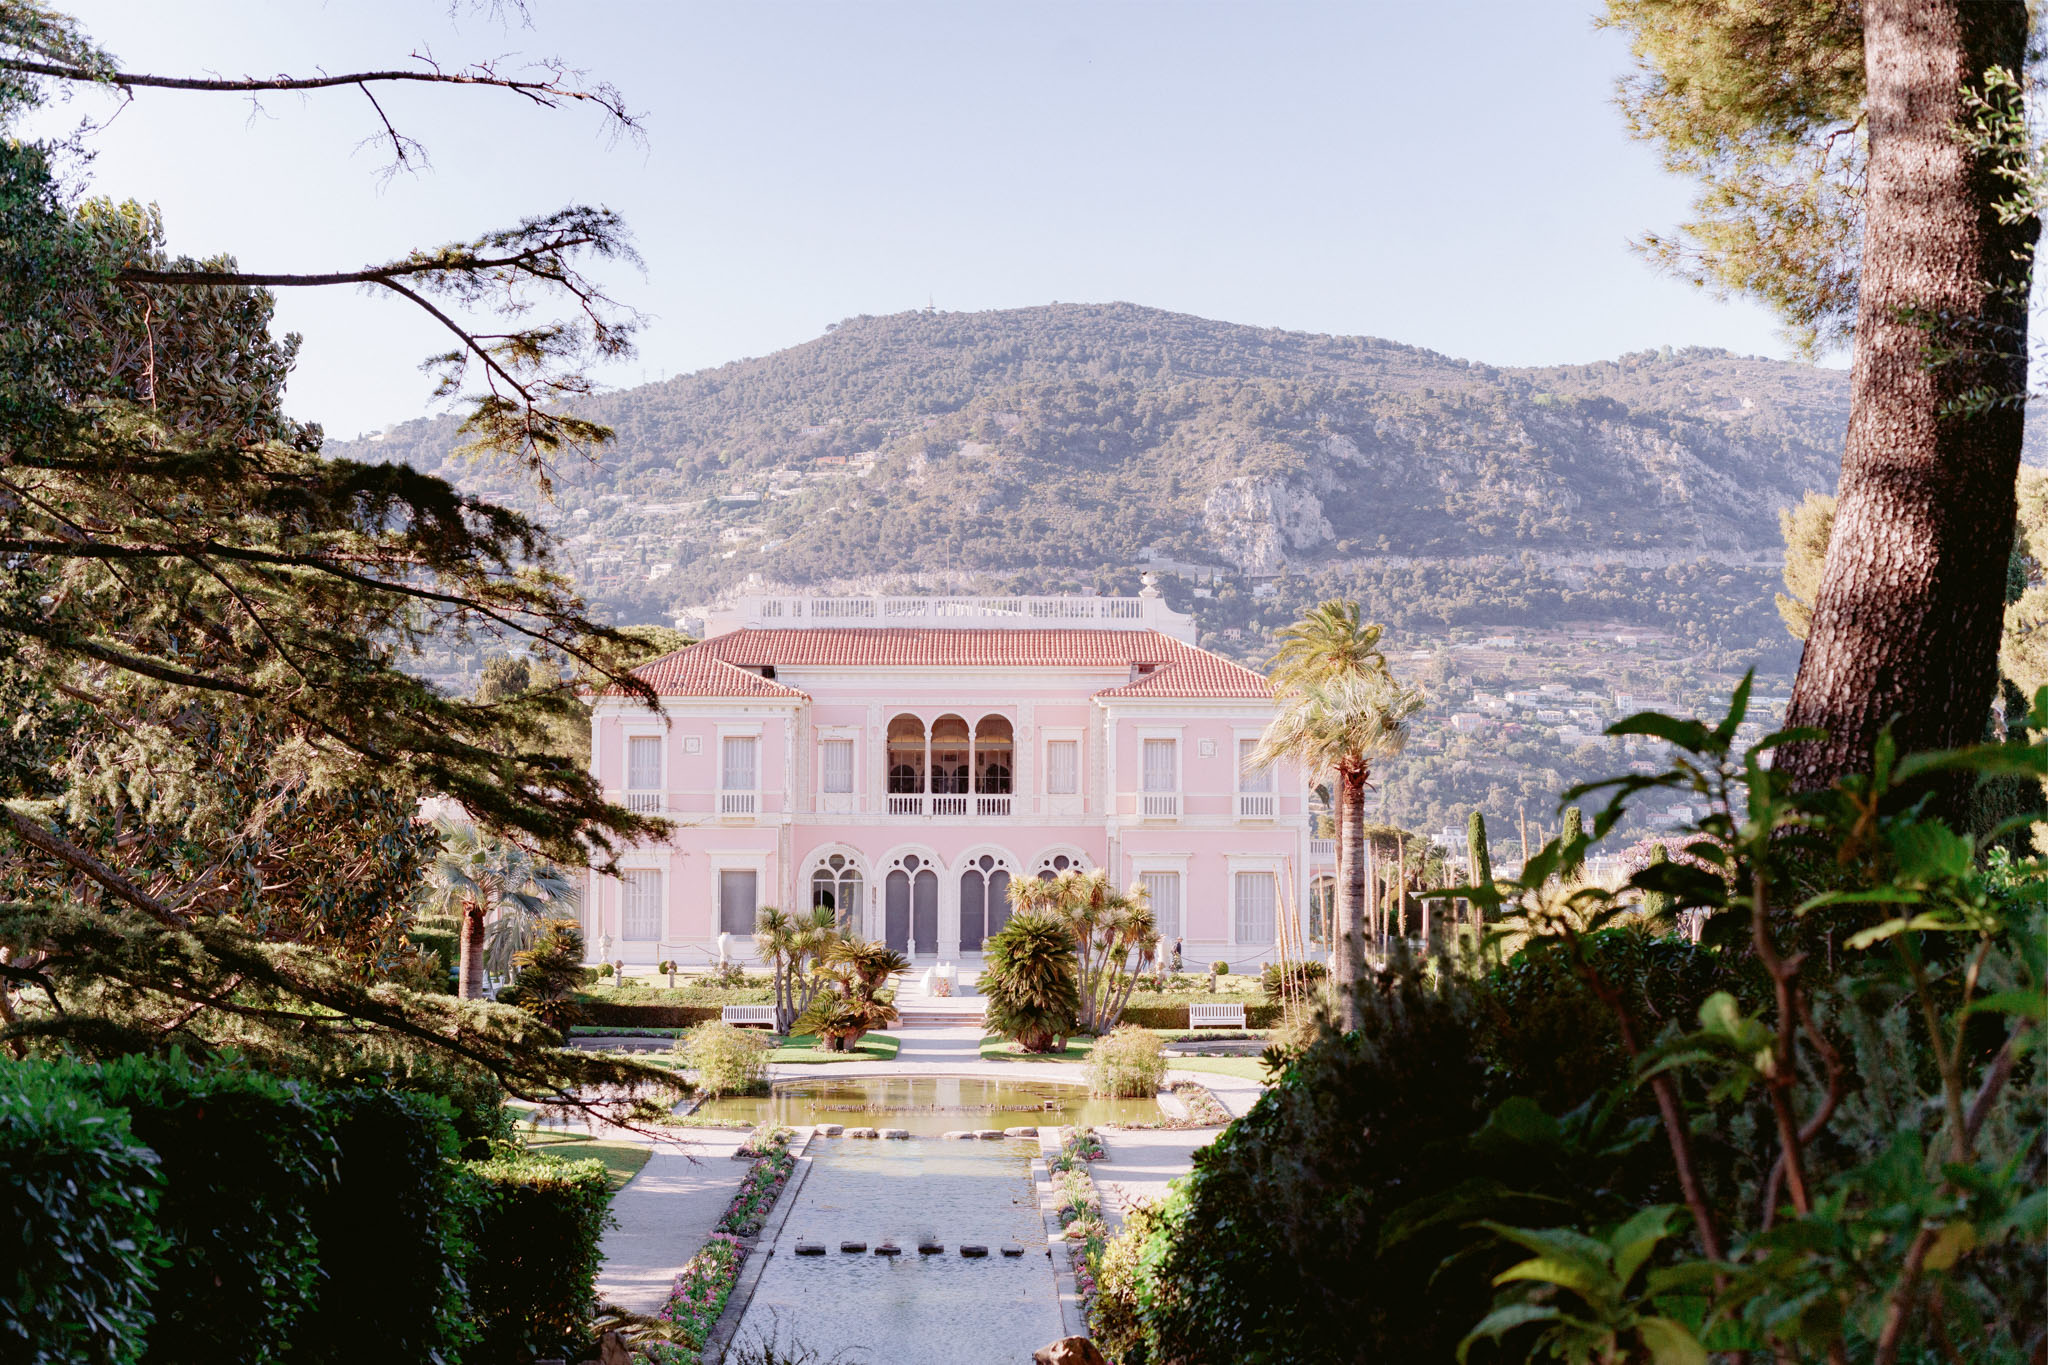 Villa Ephrussi de Rothschild French Wedding